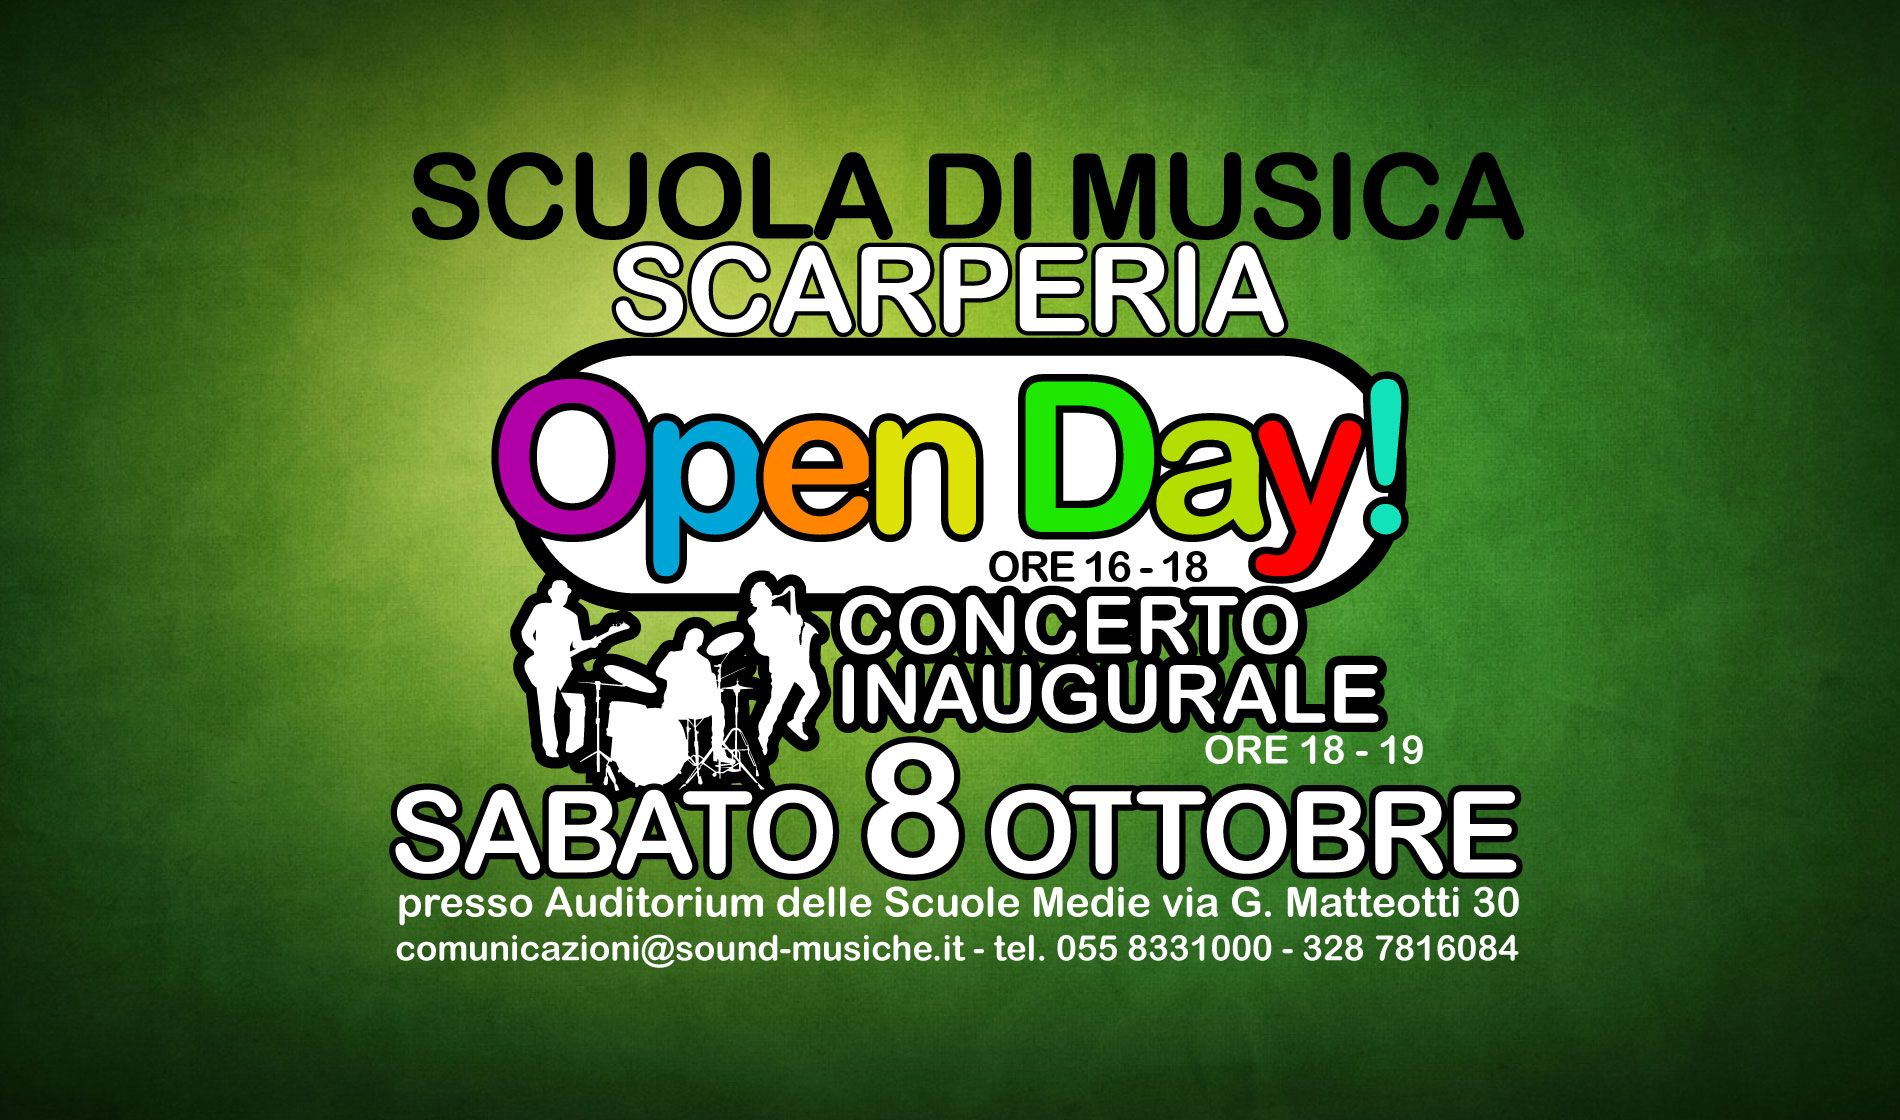 Open Day e Concerto inaugurale Scarperia 8 Ottobre 2016 16-19